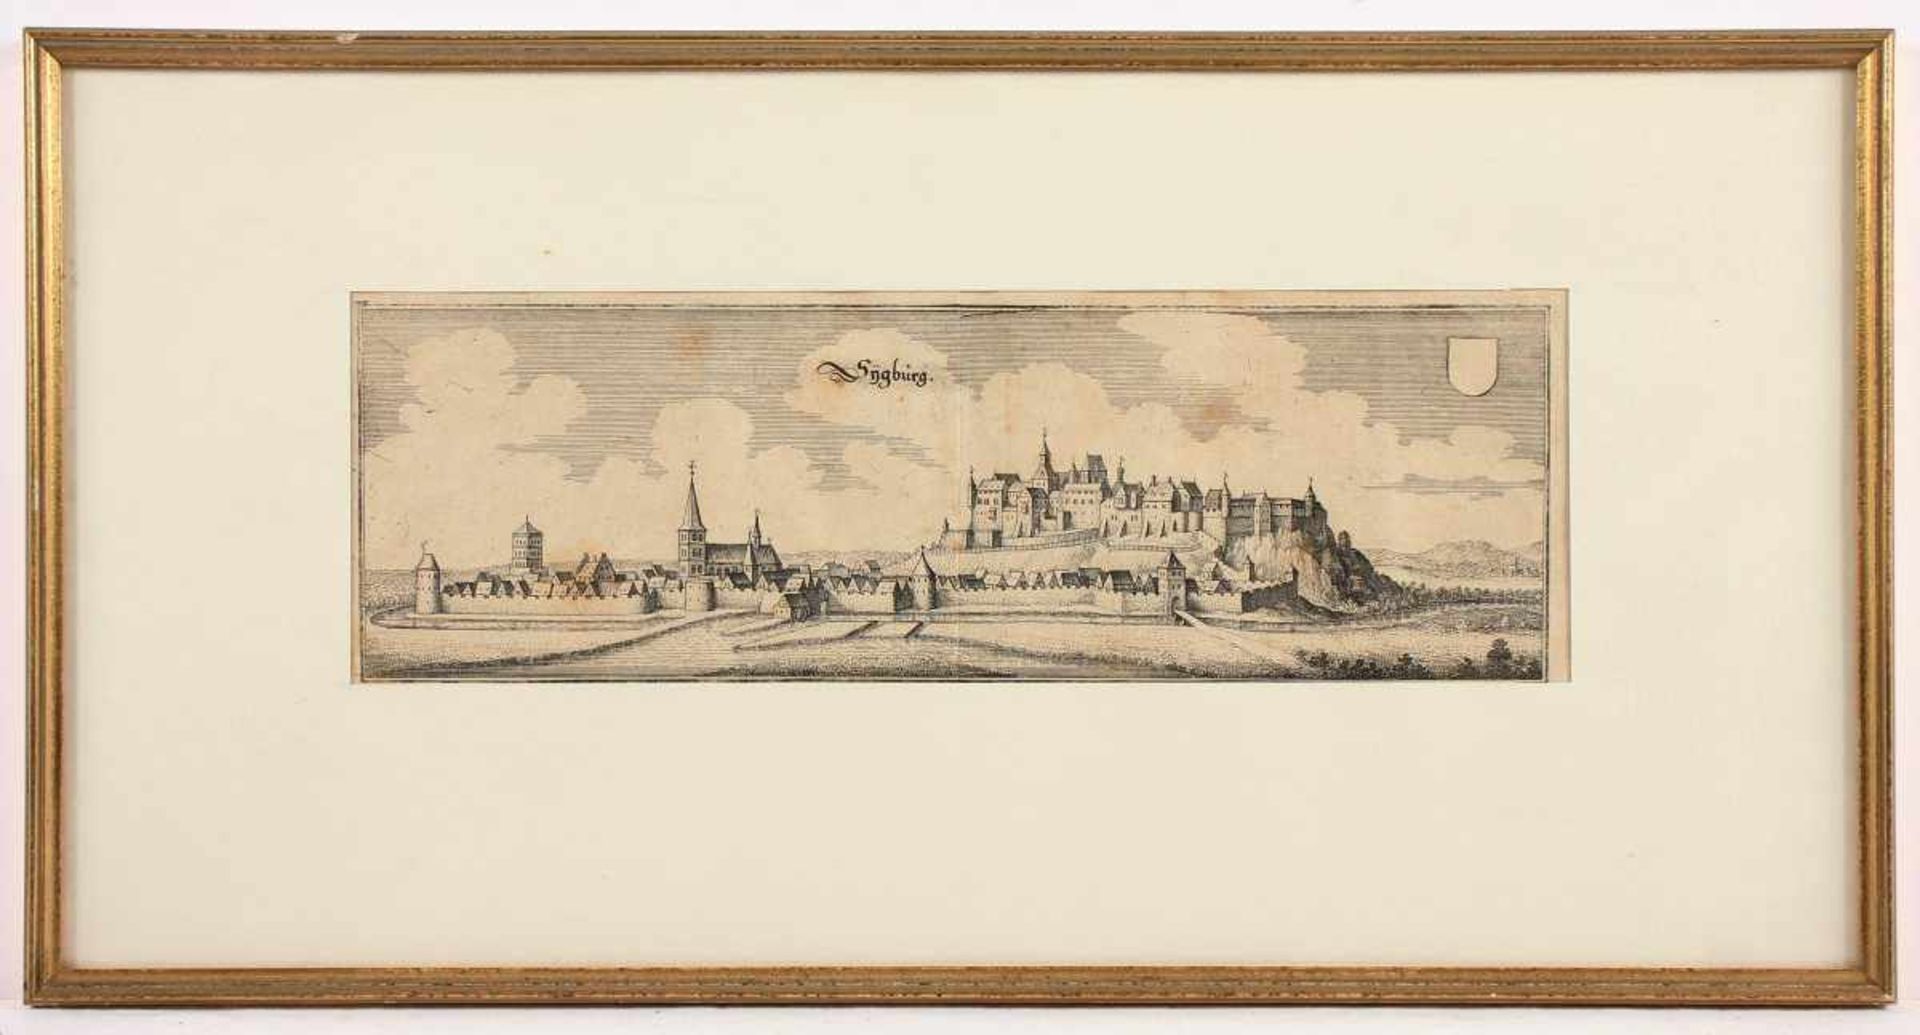 SIEGBURG, Panoramaansicht, Kupferstich, 11 x 32,5, M.MERIAN, um 1640, R.